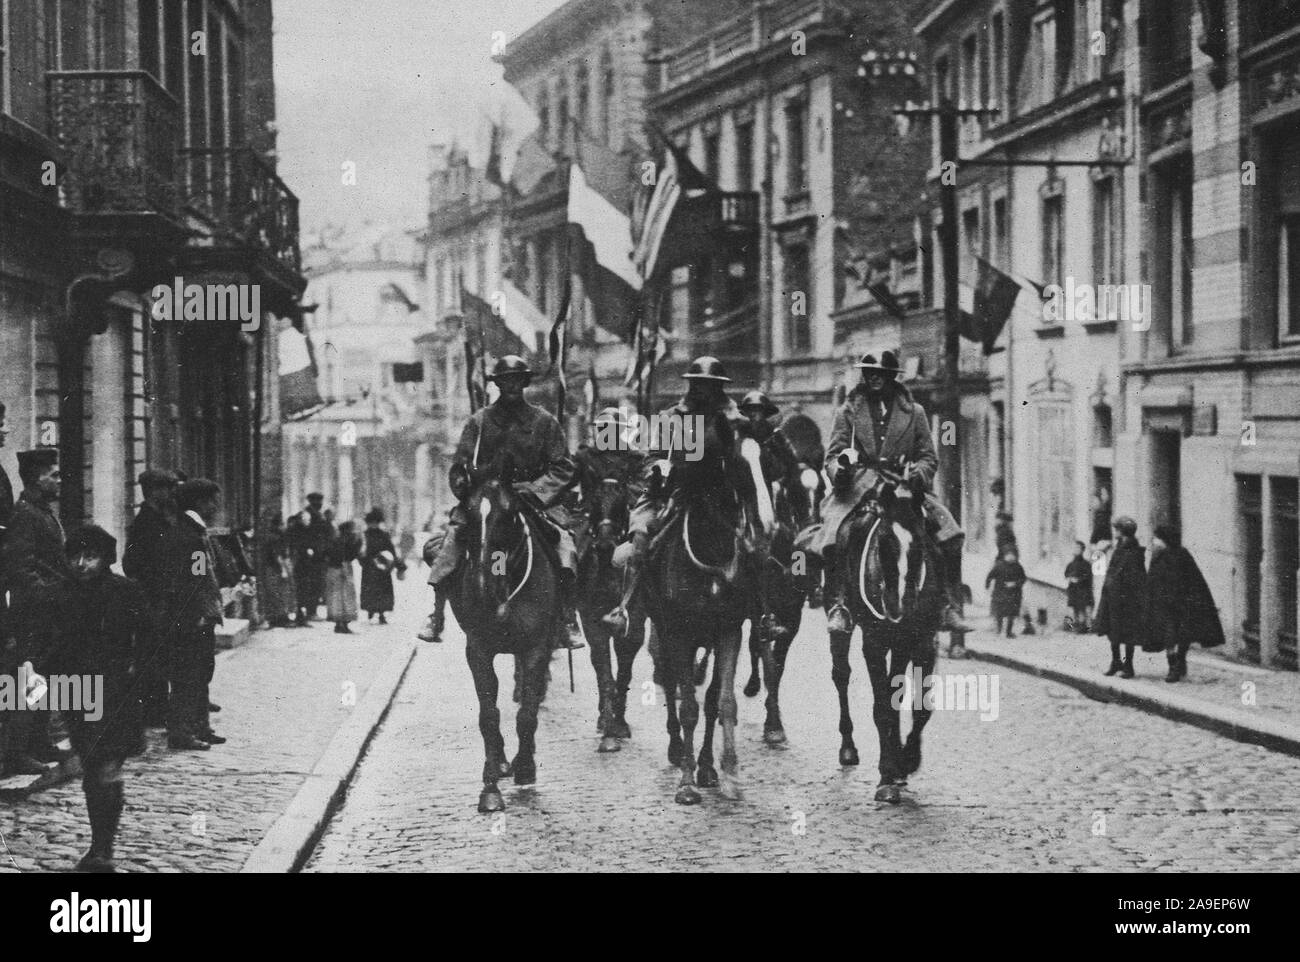 1918 - Armistice - British entrez Spa. Les forces de l'avance des forces britanniques entre Spa, le village où les termes de l'armistice ont été discutés Banque D'Images